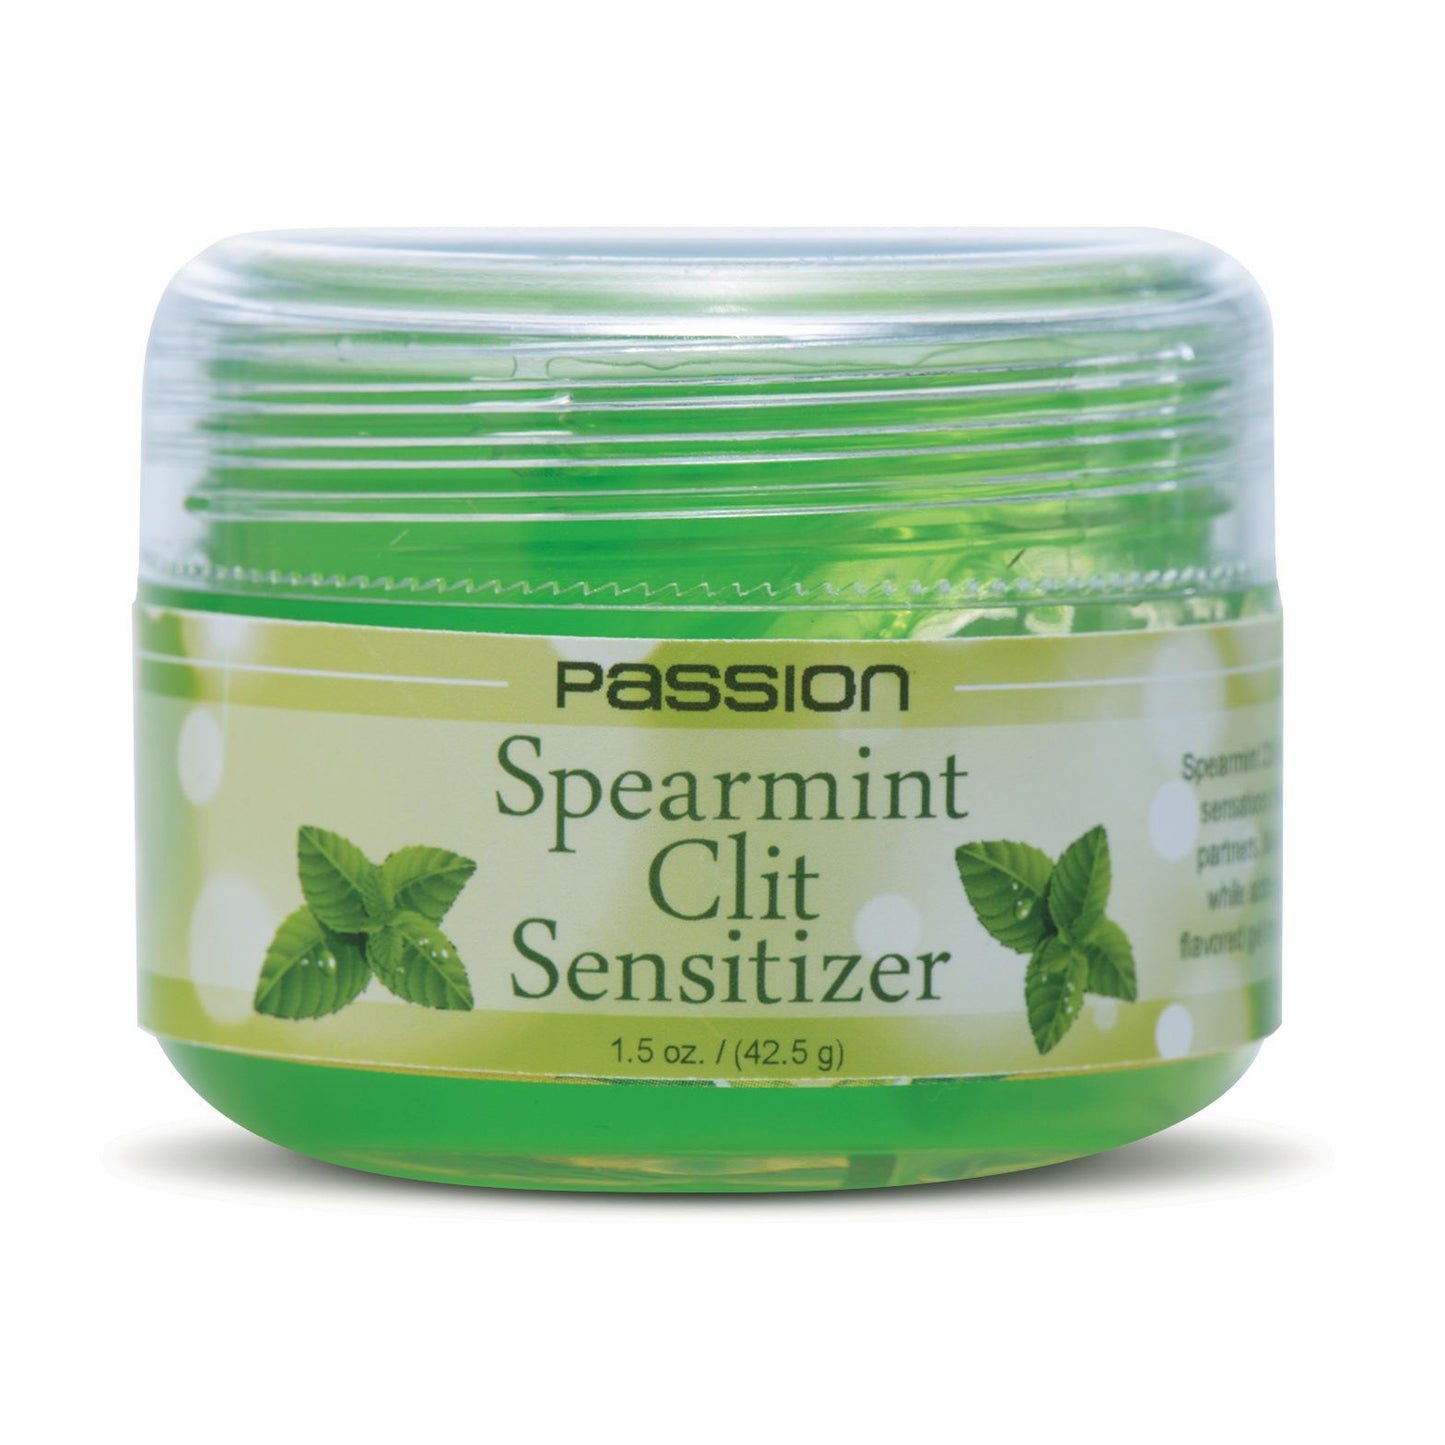 Passion Spearmint Clit Sensitizer - 1.5 Oz